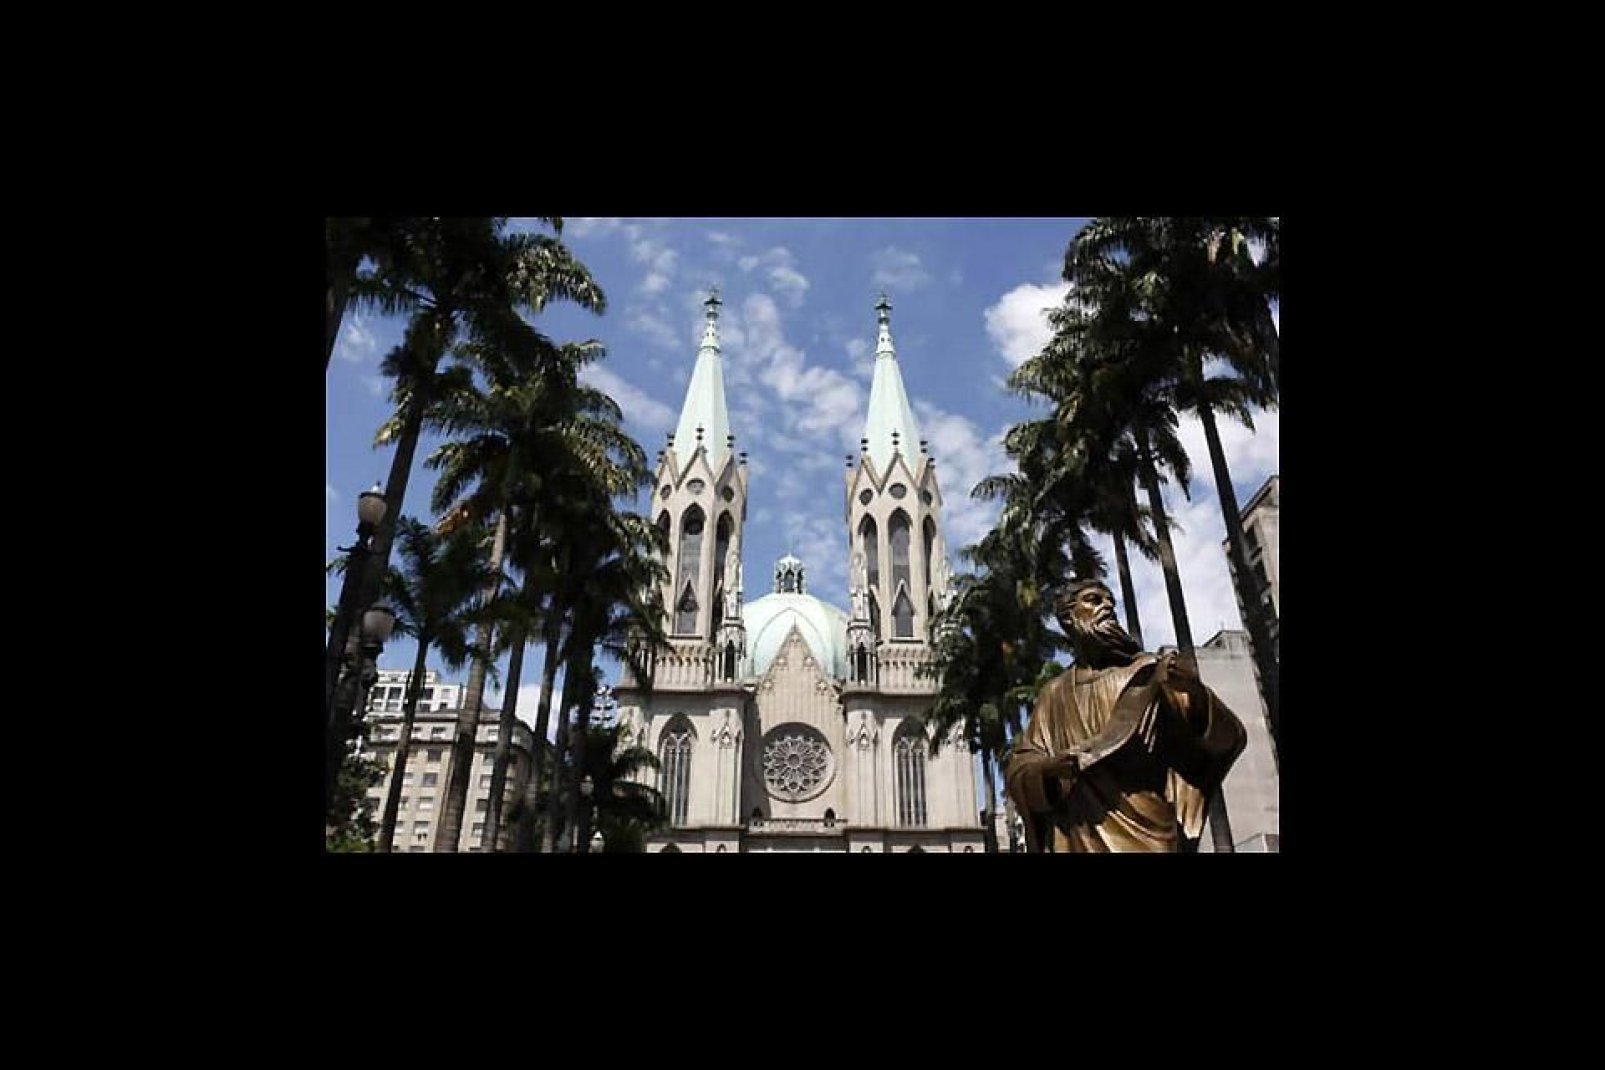 Frente a la catedral se yergue la estatua del apóstol Pablo para rendir homenaje al fundador de São Paulo. Fue erigida en su honor tras su conversión al Catolicismo.